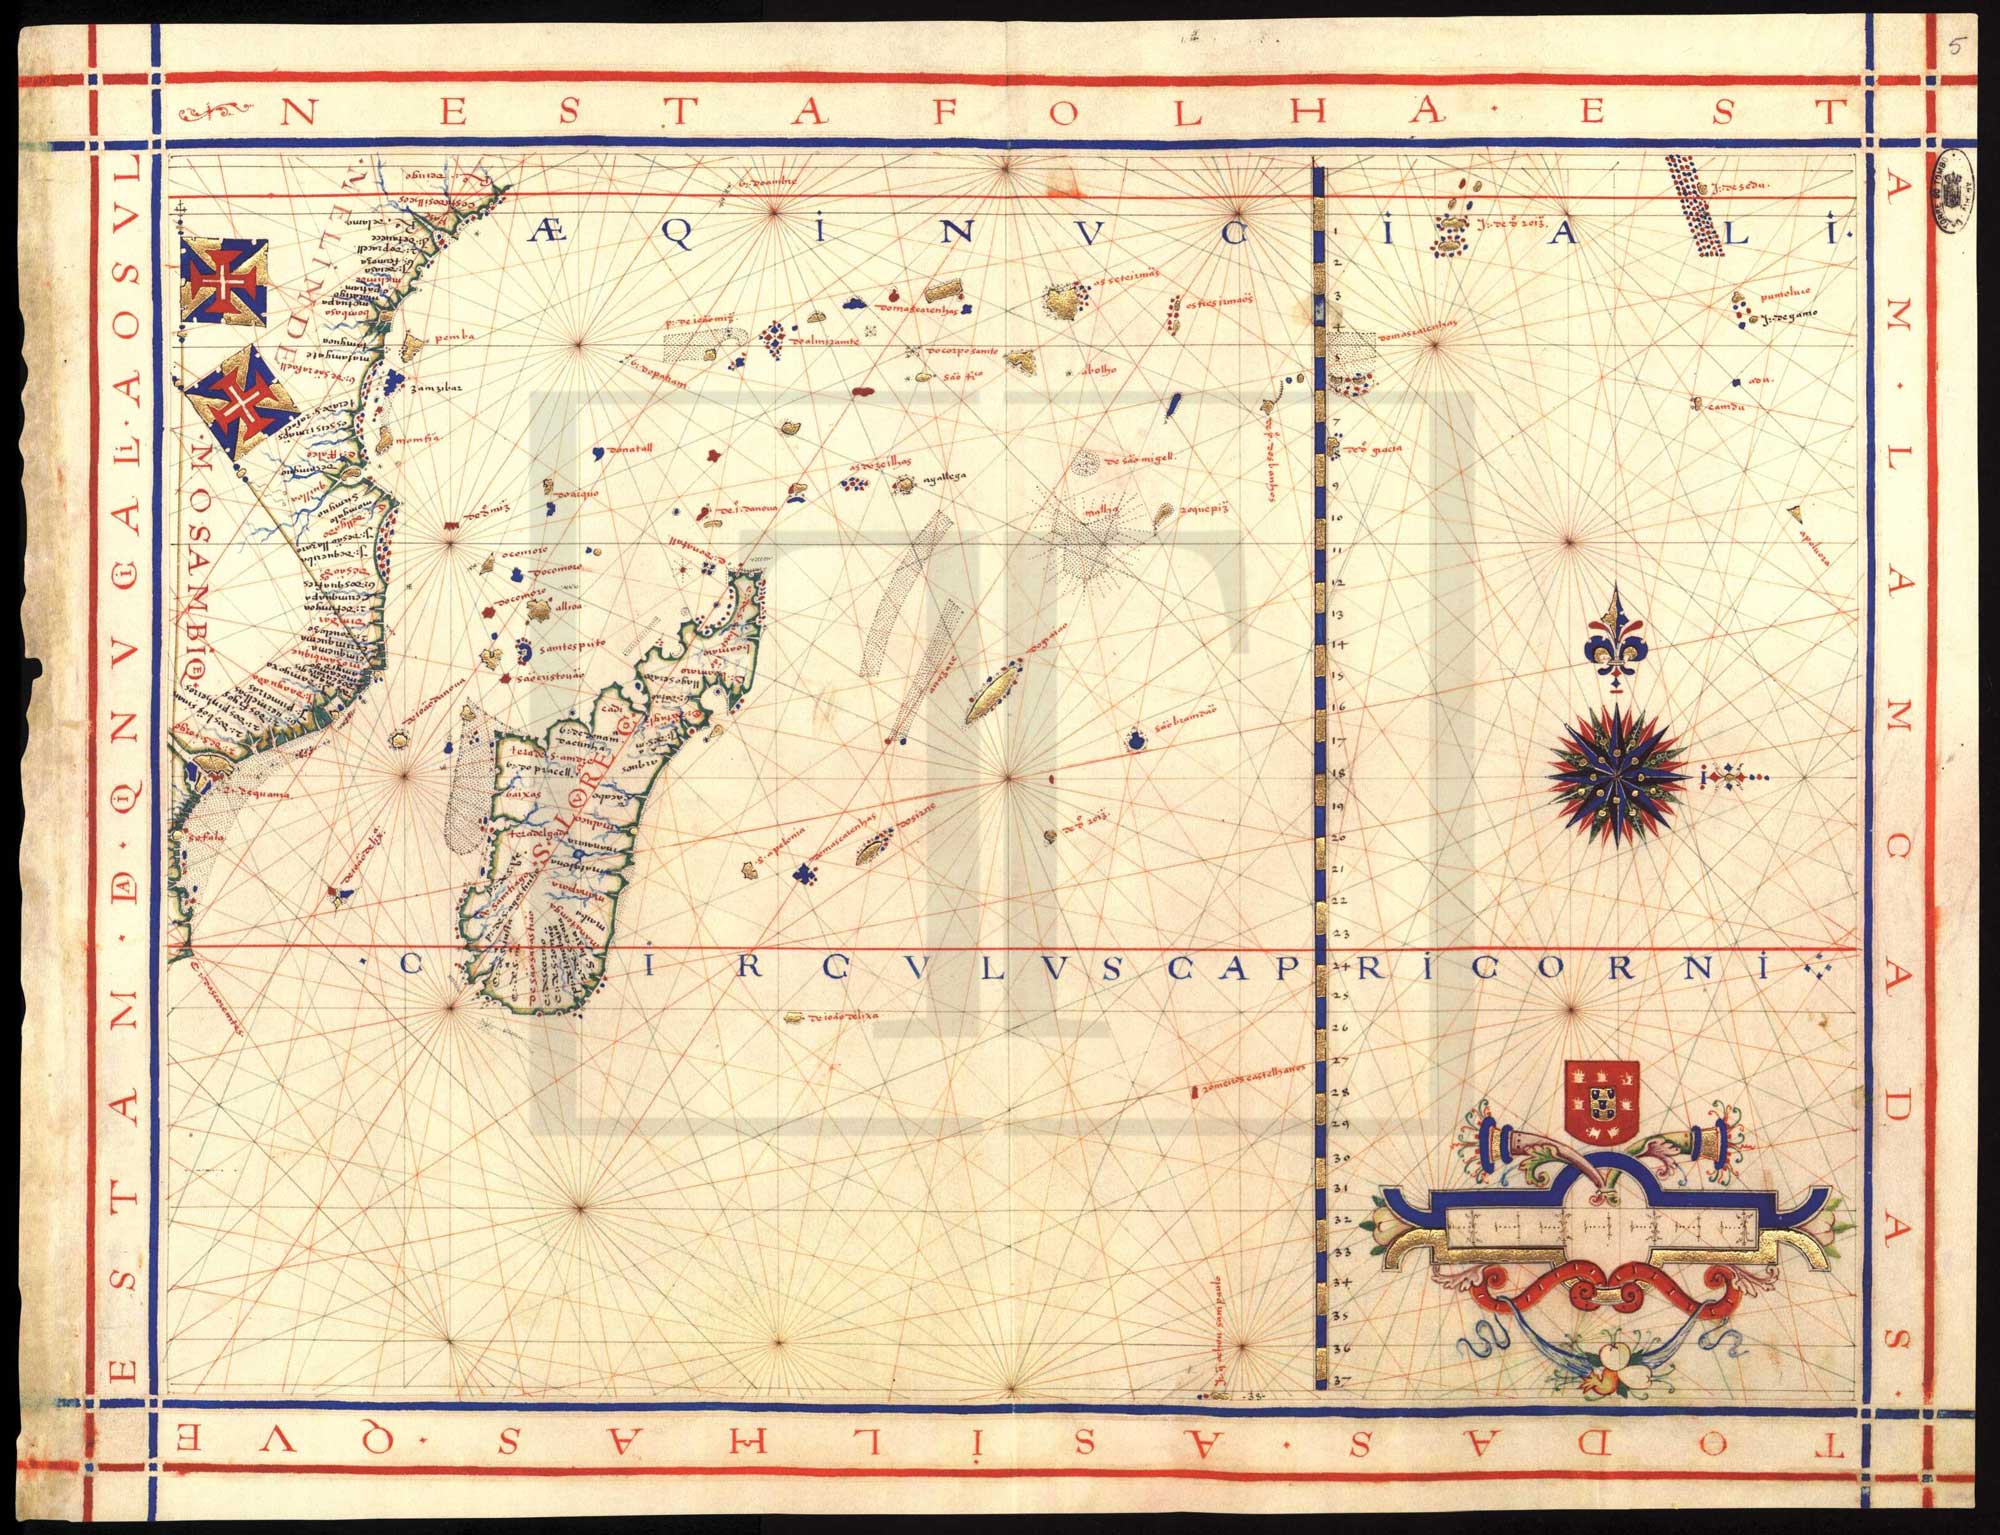 Madagascar as São Lourenço (Saint Lawrence) from Fernão Vaz Dourando’s atlas of 1571